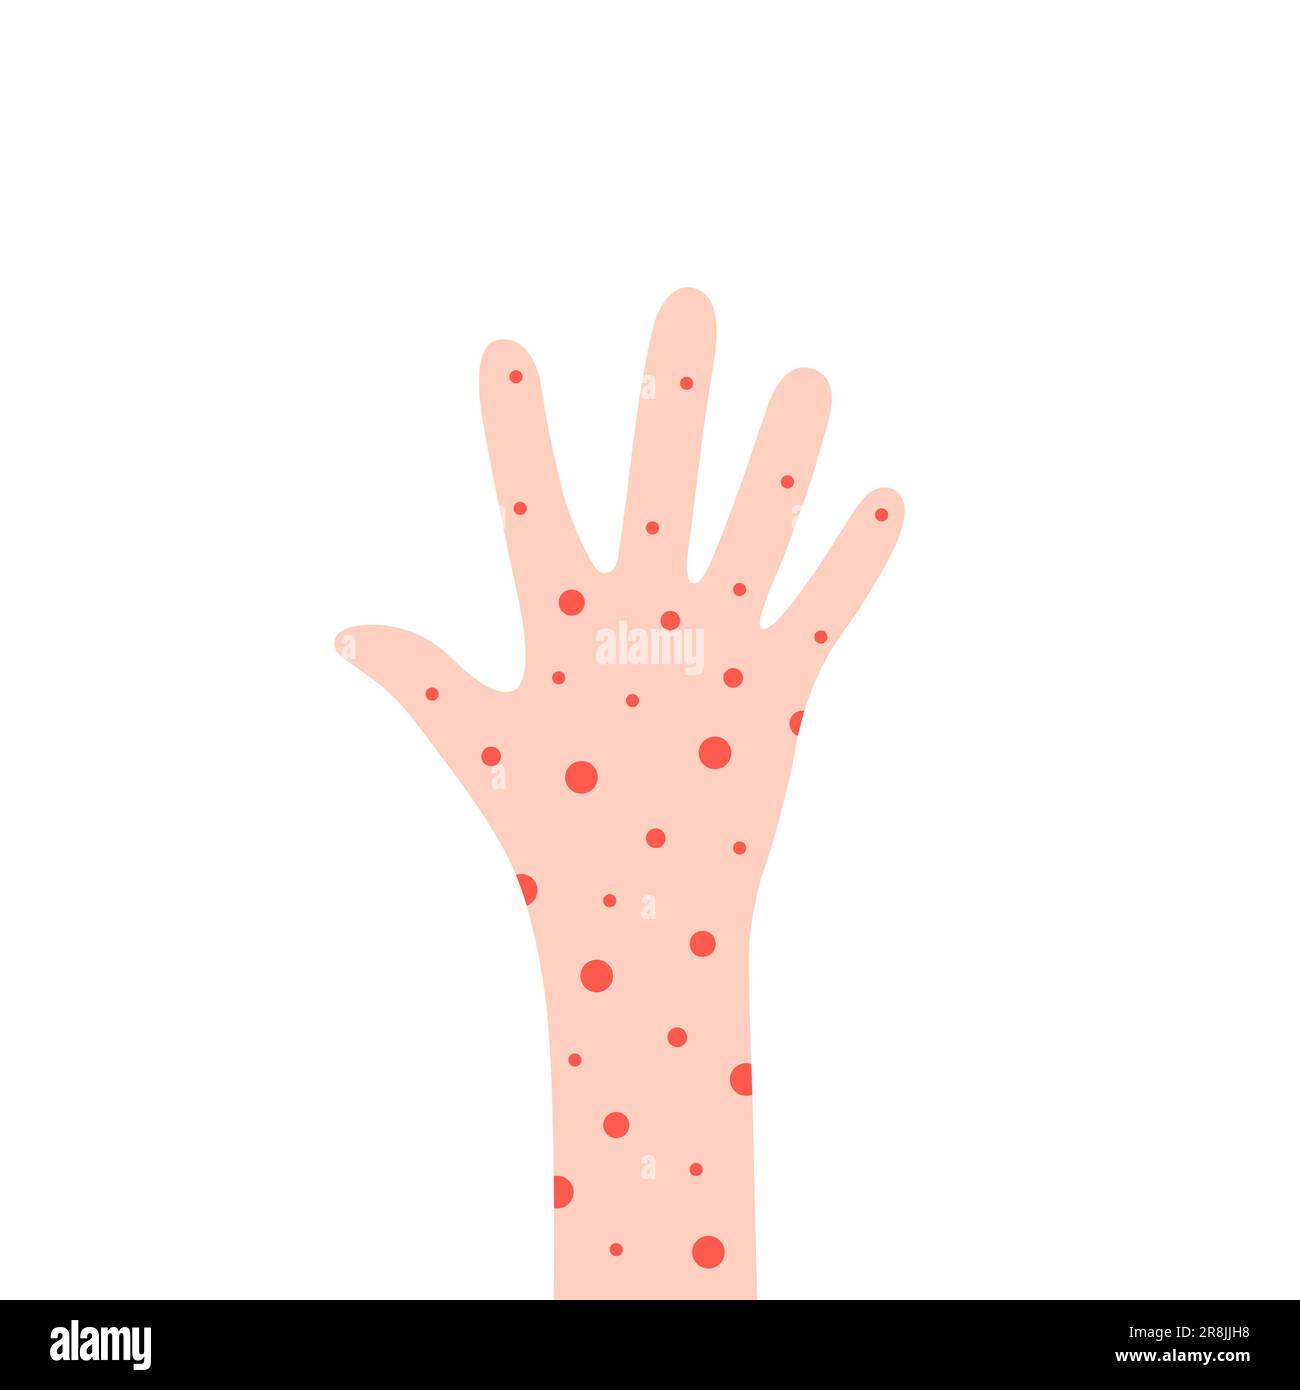 cartoon hand with rash like allergy Stock Vector